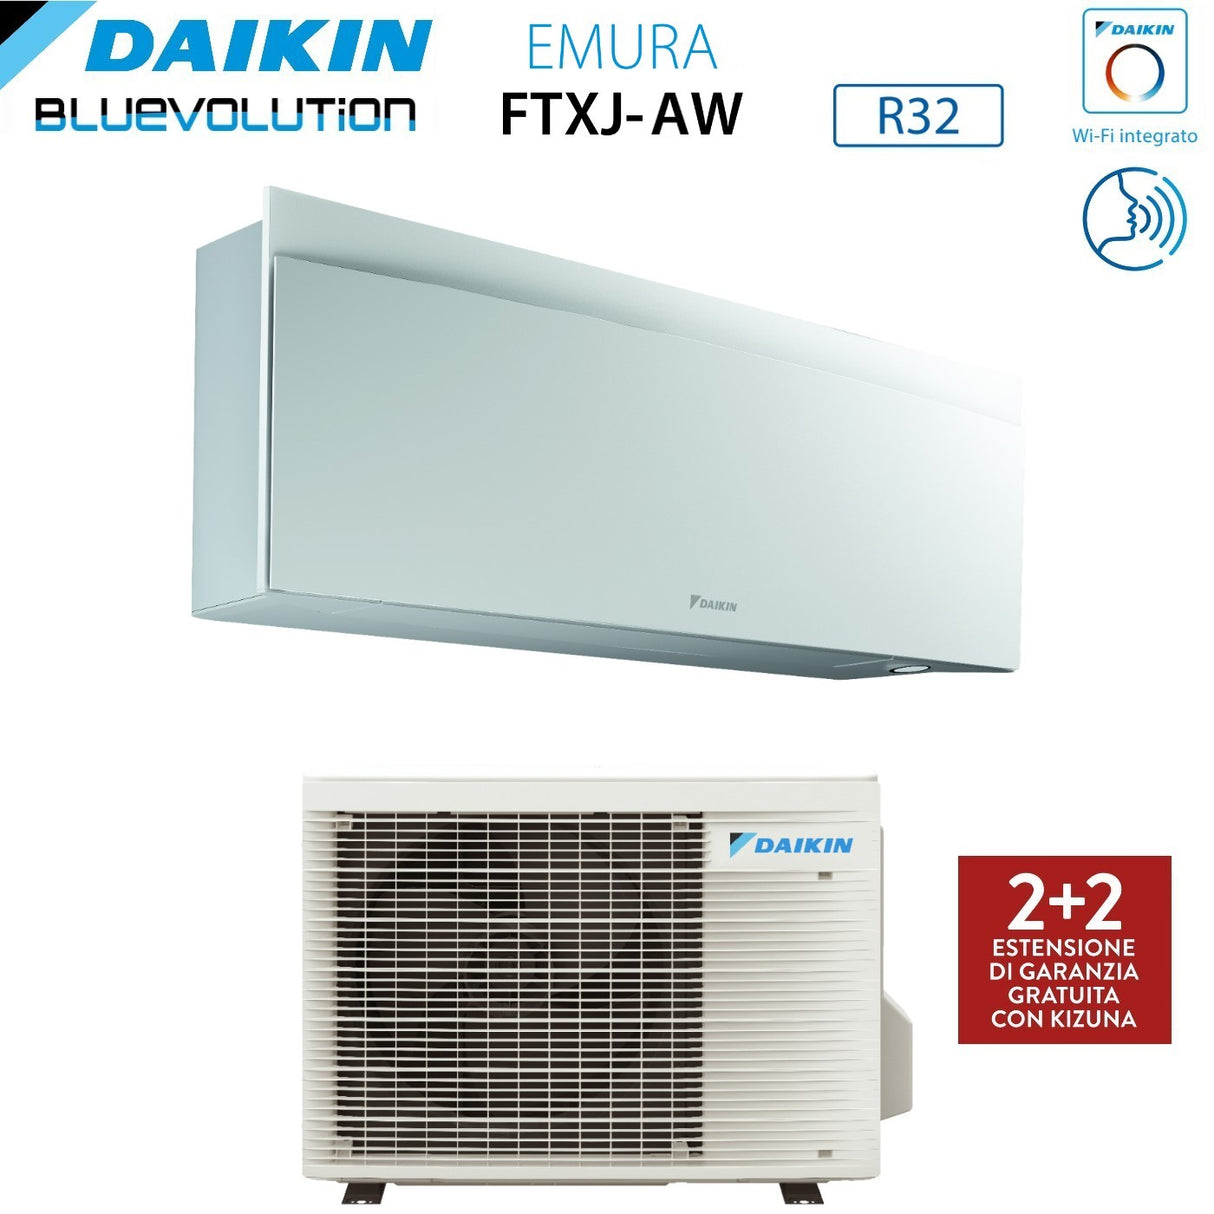 immagine-4-daikin-climatizzatore-condizionatore-daikin-bluevolution-inverter-serie-emura-white-iii-12000-btu-ftxj35aw-r-32-wi-fi-integrato-classe-a-garanzia-italiana-novita